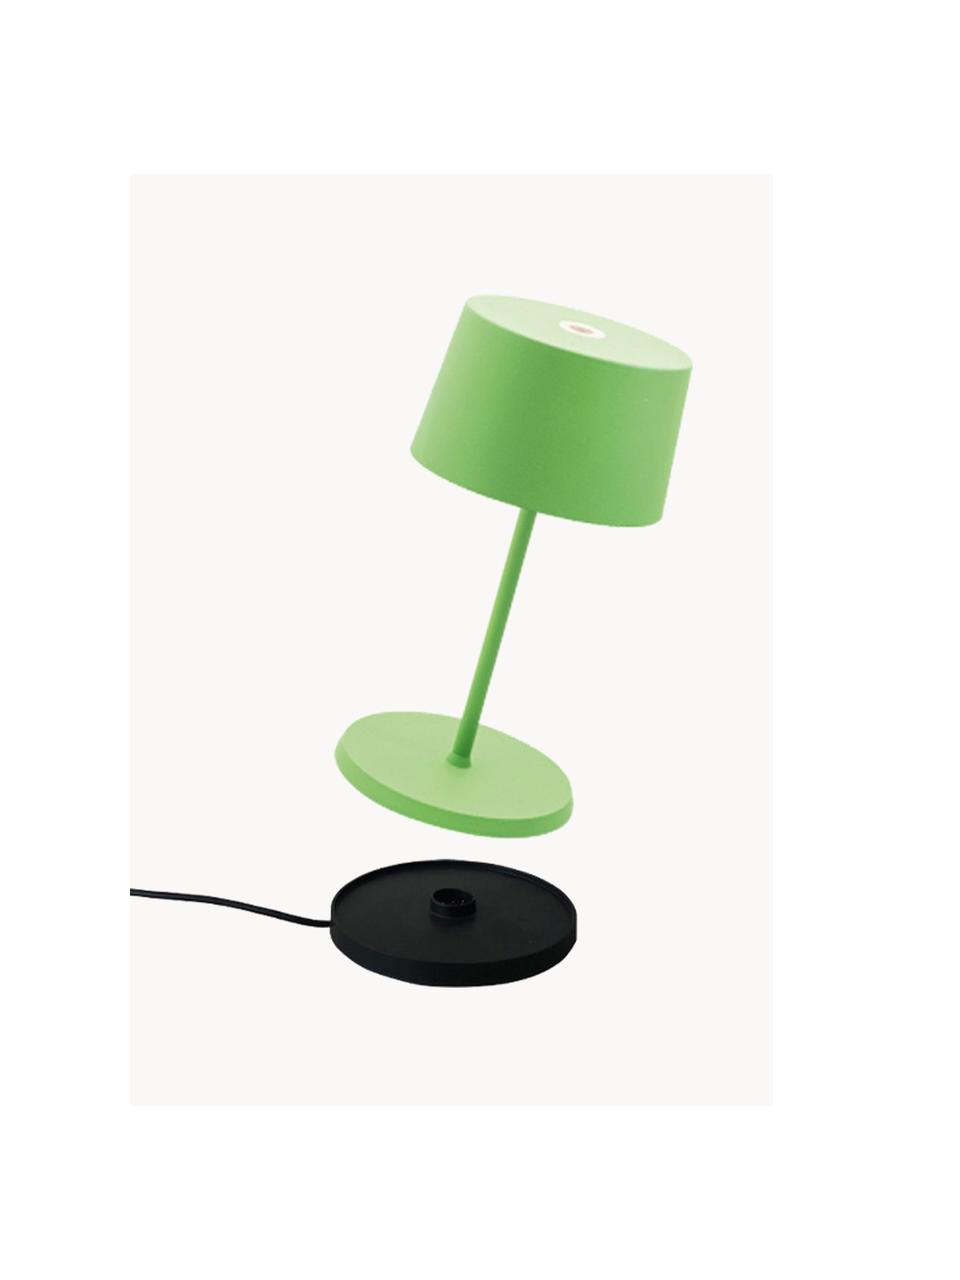 Lampada da tavolo portatile a LED luce regolabile Olivia Pro, Lampada: alluminio rivestito, Verde chiaro, Ø 11 x Alt. 22 cm